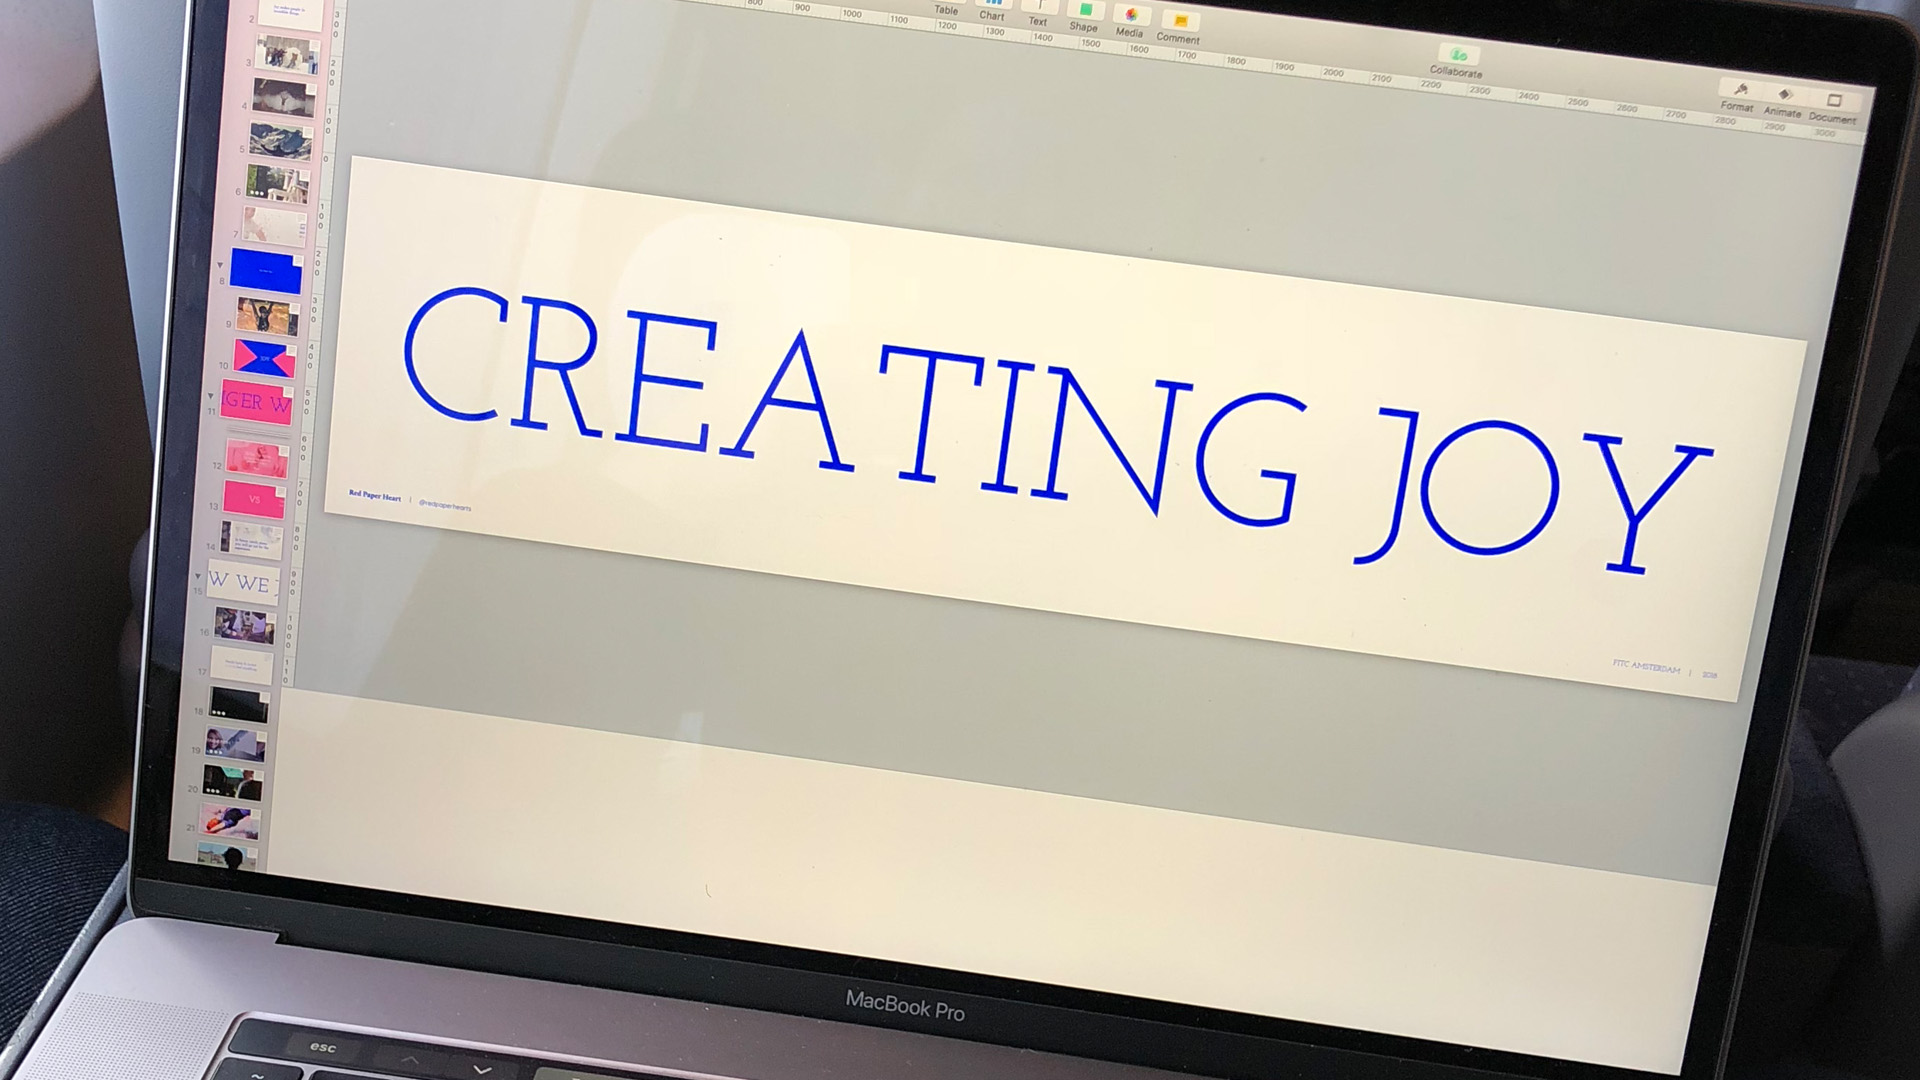 presentation slides, slide shows text: creating joy